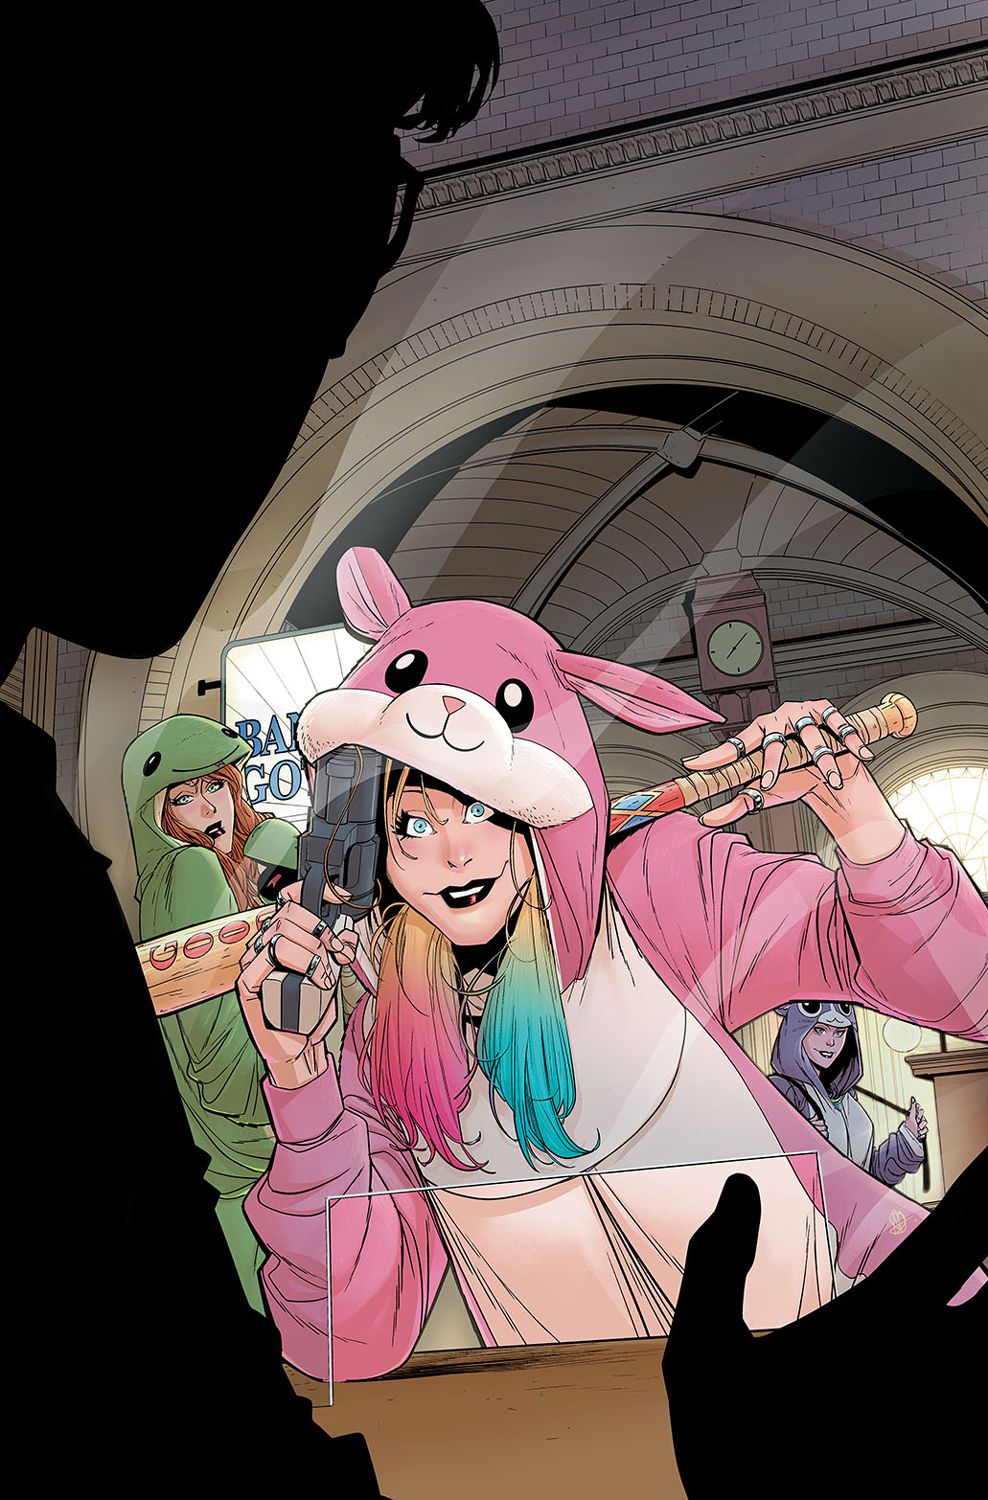 Harley Quinn, vêtue d'une combinaison rose en forme de hamster, se penche, souriante, sur le comptoir d'un caissier de banque, tenant une batte de baseball dans une main et un pistolet dans l'autre.  Derrière elle, Poison Ivy et Catwoman peuvent être vues dans leurs propres combinaisons vertes et violettes.